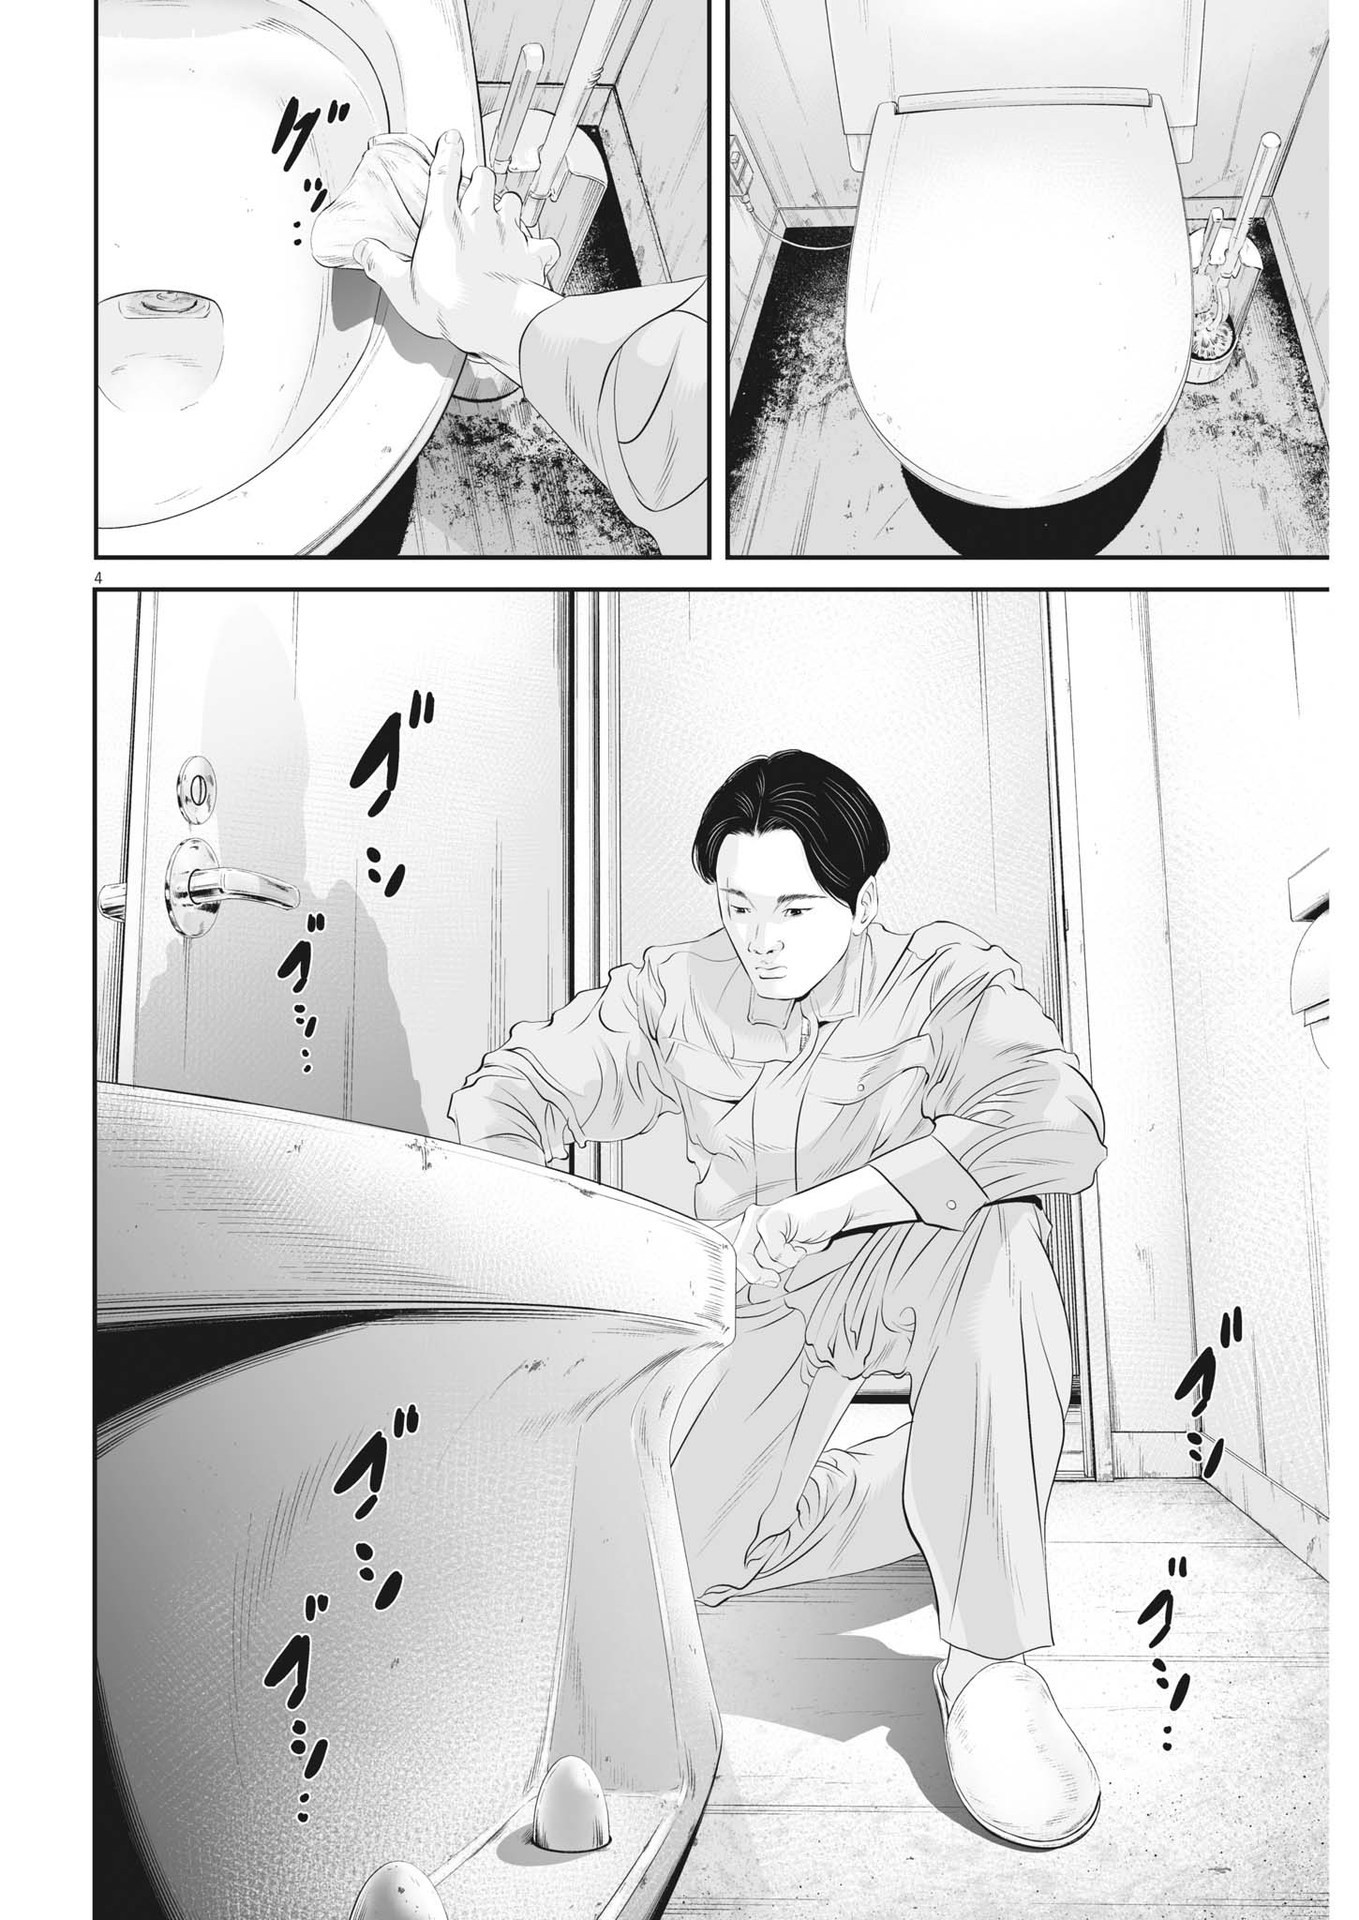 Kujou no Taizai - Chapter 95 - Page 4